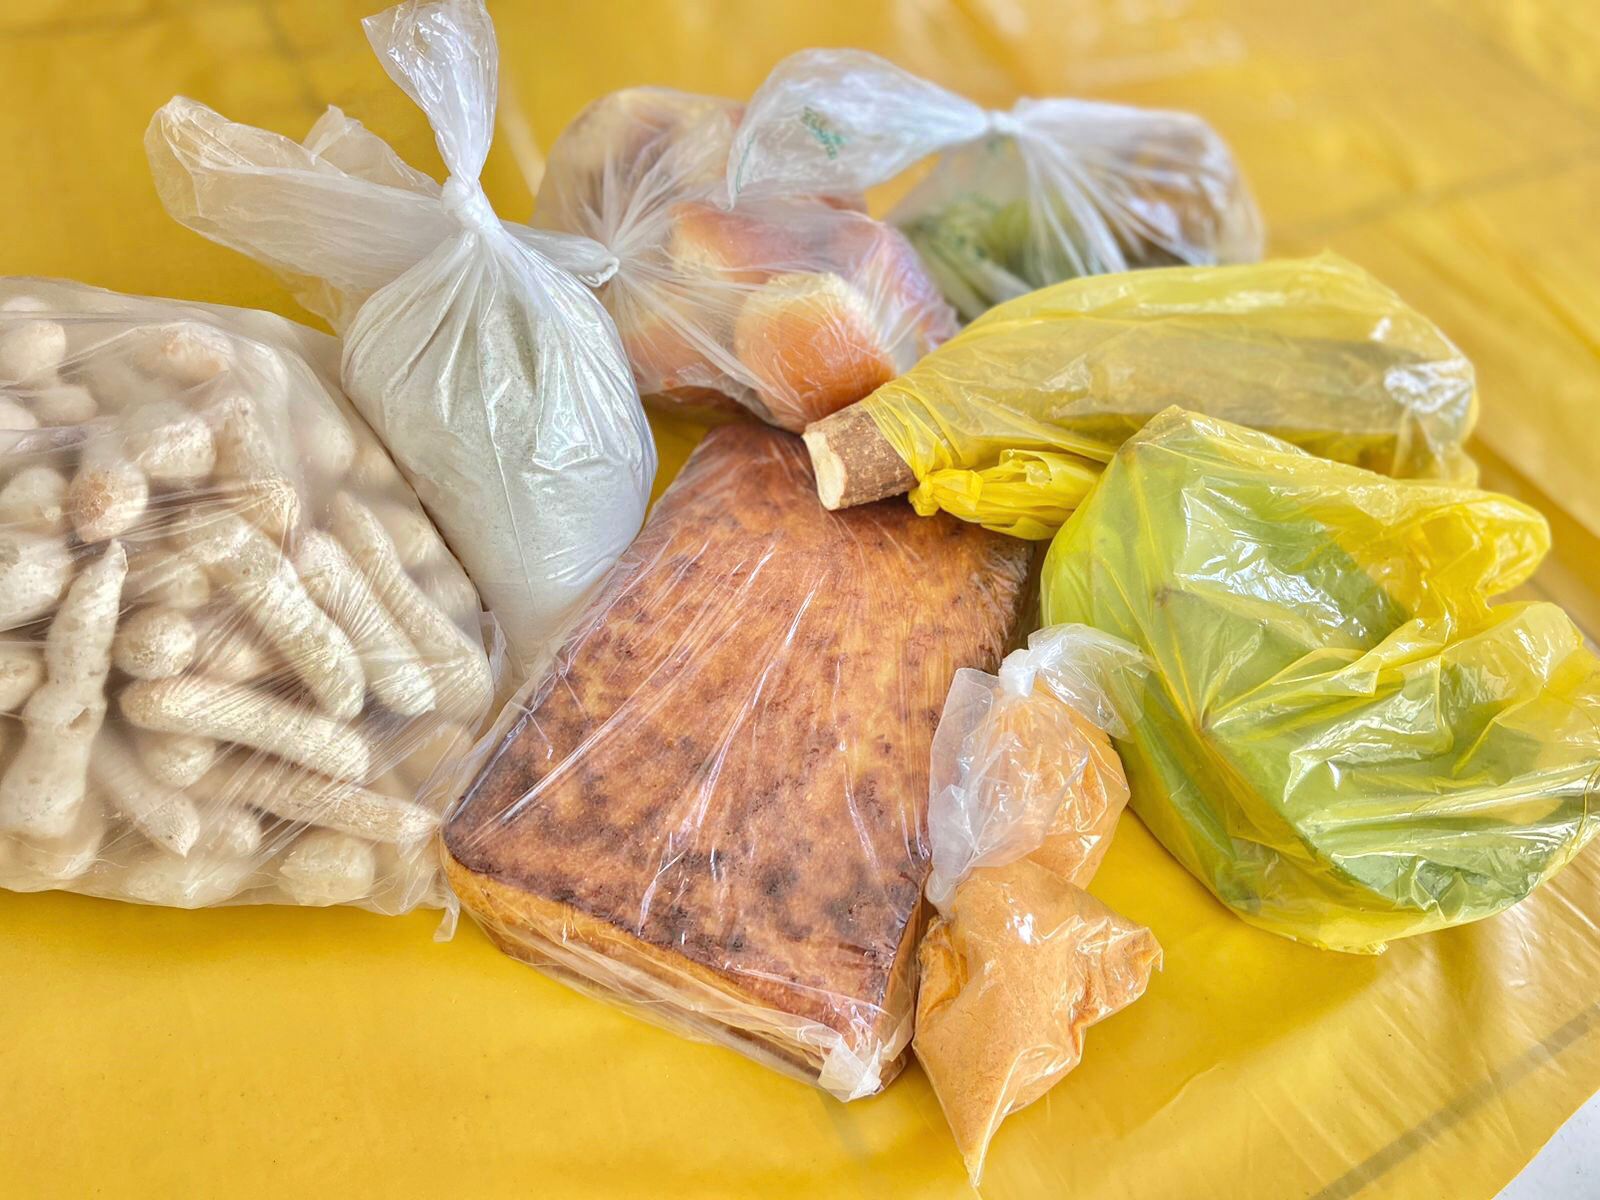 Programa de Aquisição de Alimentos (PAA) é retomado pelo Governo Federal e já beneficia dezenas de famílias em Itagimirim e União Baiana 56